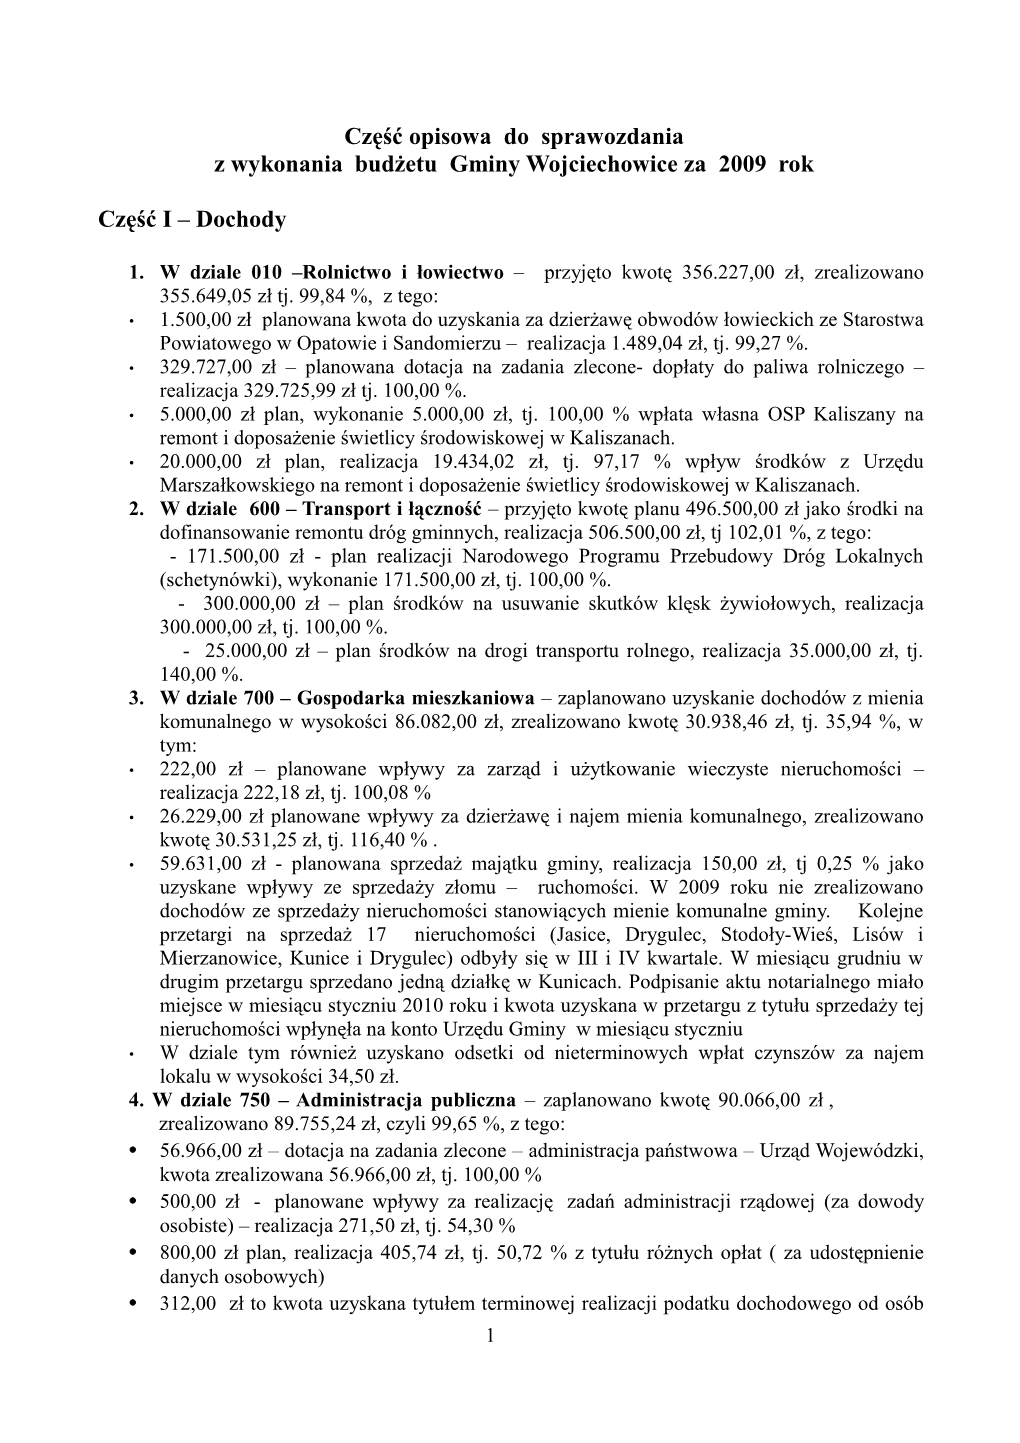 Część Opisowa Do Sprawozdania Z Wykonania Budżetu Gminy Wojciechowice Za 2009 Rok